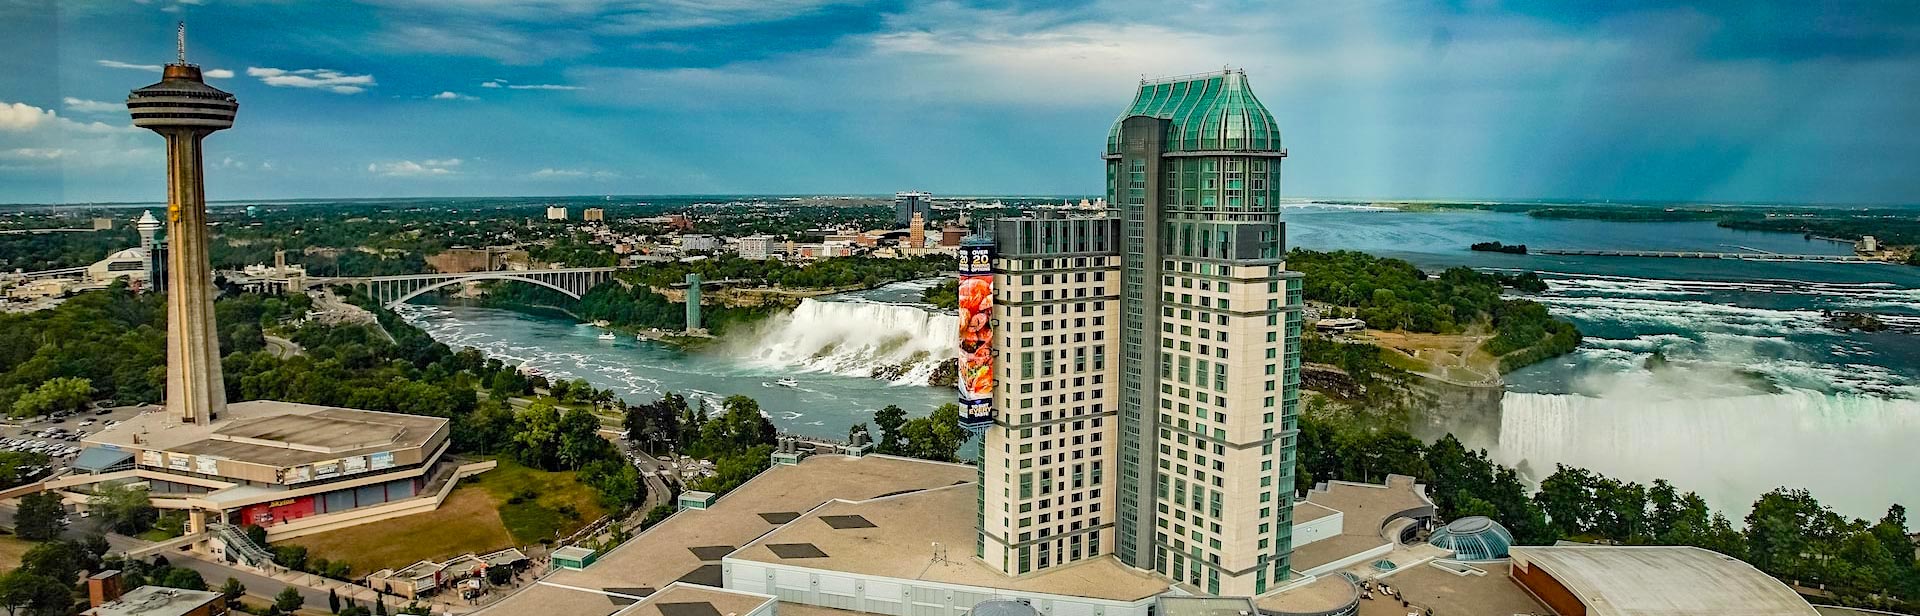 Pemandangan Air Terjun Niagara dari bangunan.